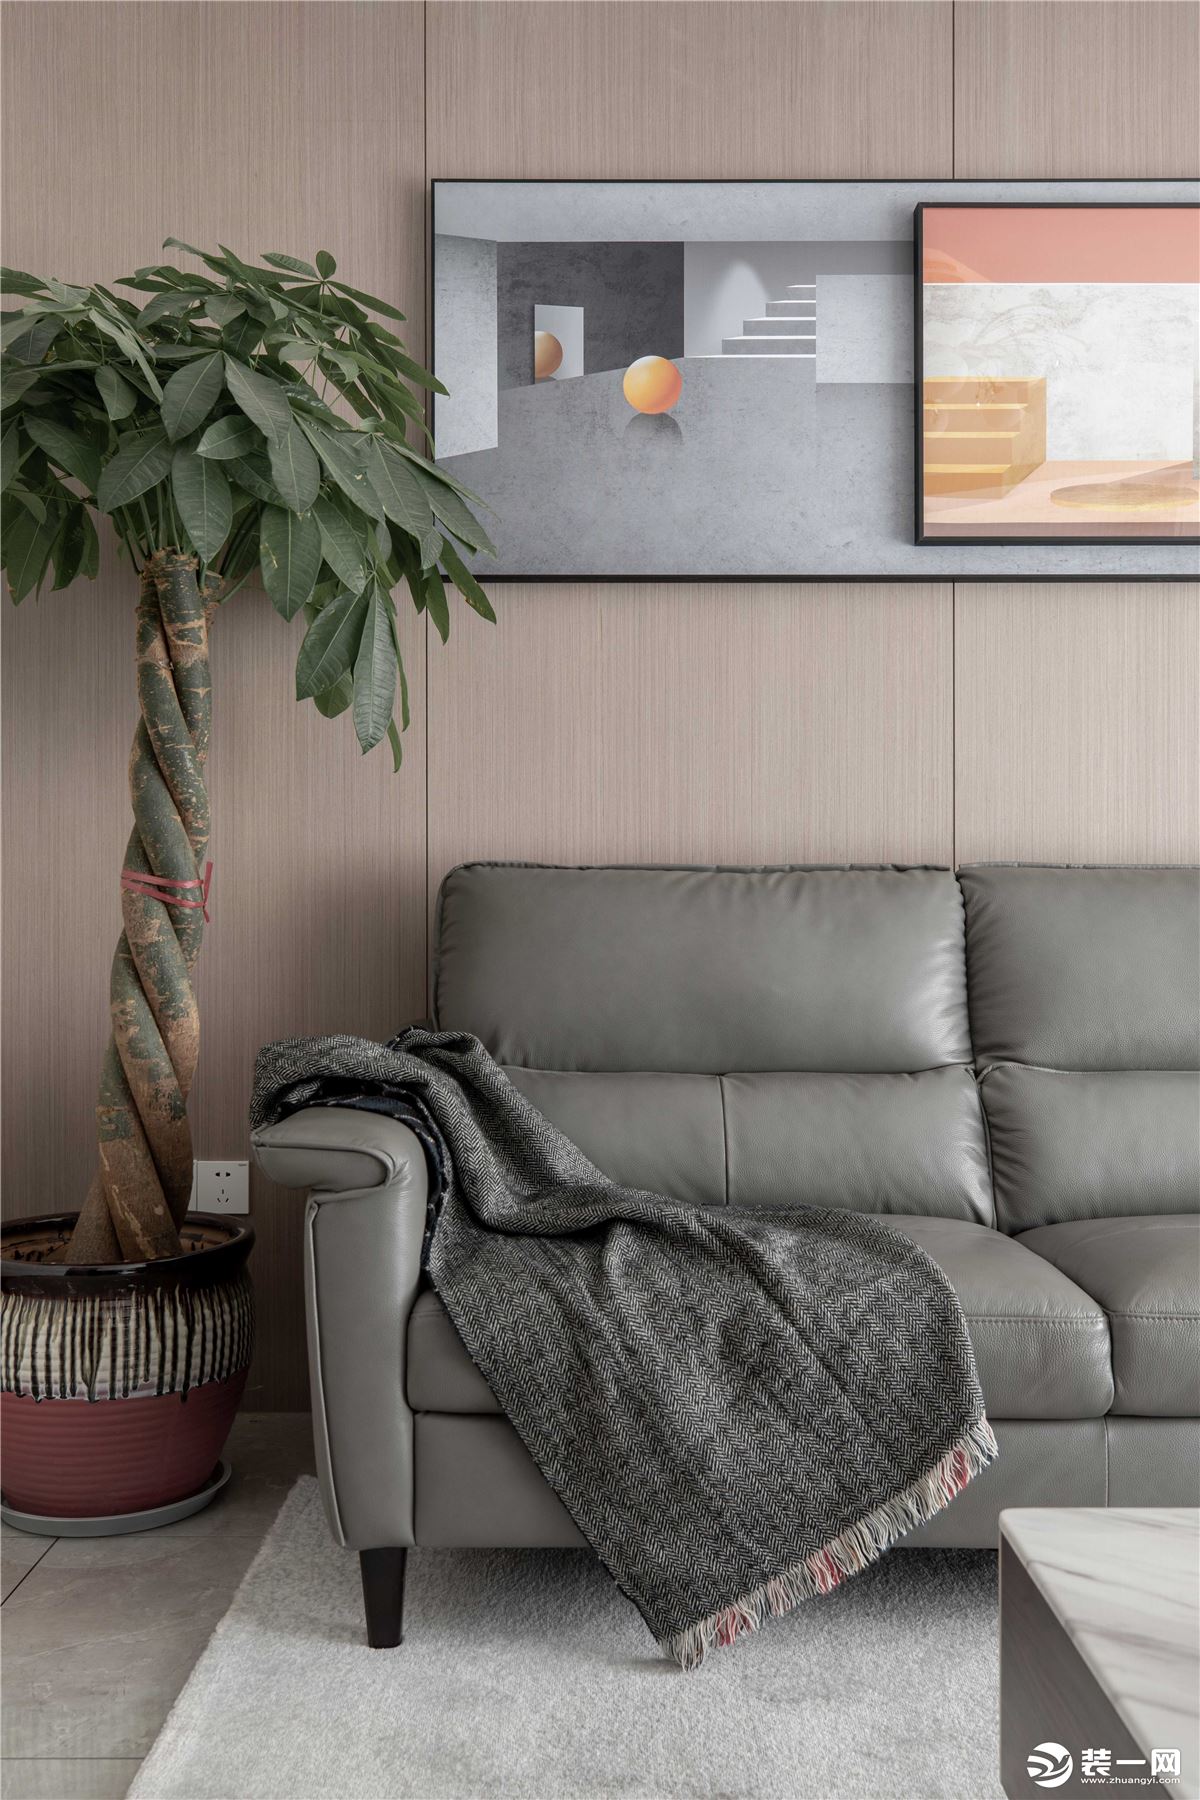 与灰棕调的沙发互相映衬，营造出时尚明朗的现代都市风格。